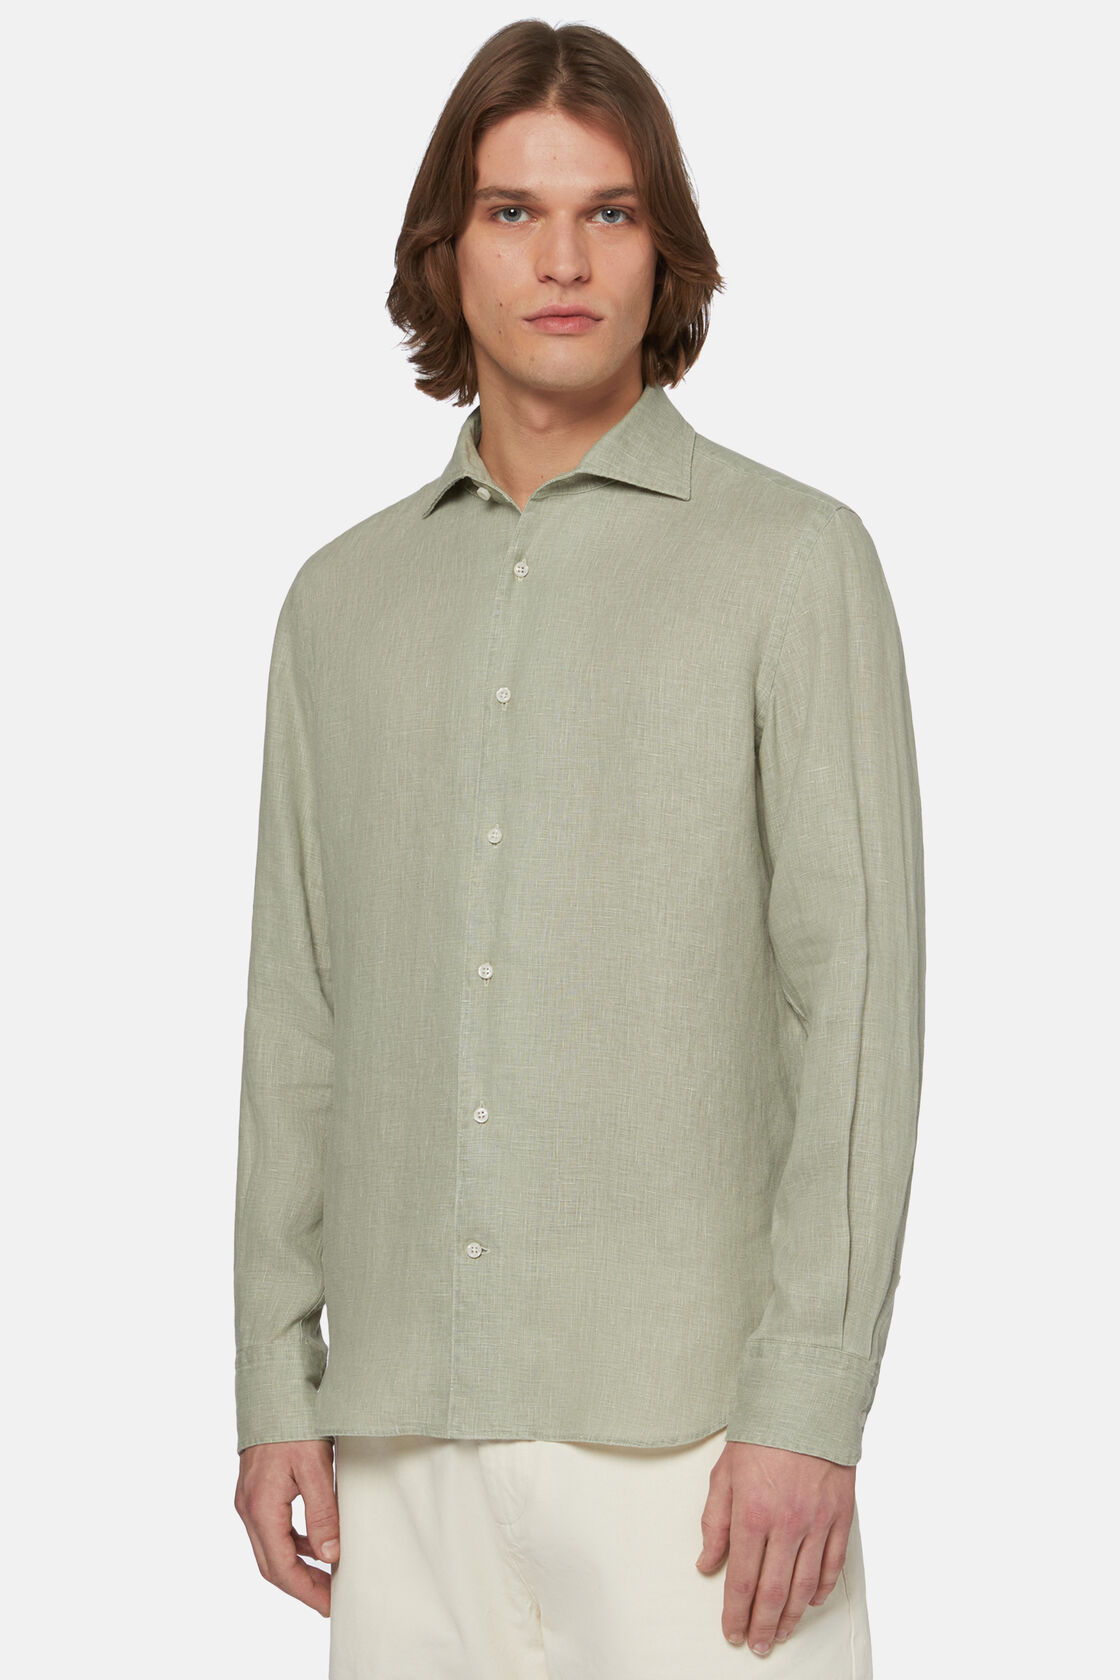 Λινό πουκάμισο με κανονική εφαρμογή, σε χακί χρώμα, Military Green, hi-res